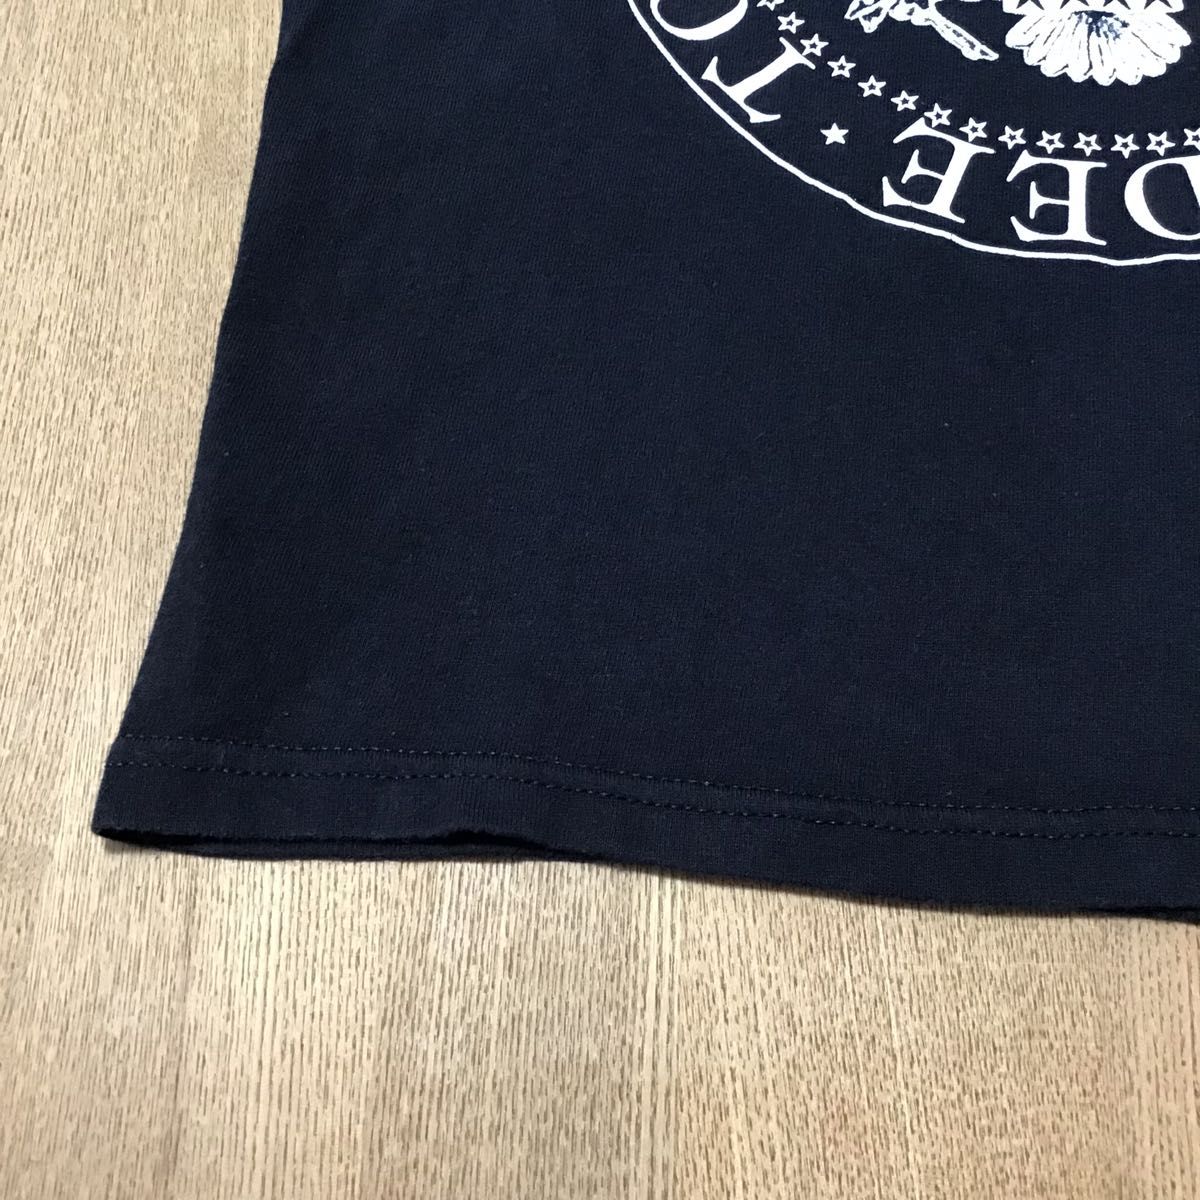 【USED】RAMONES Tシャツ Sサイズ